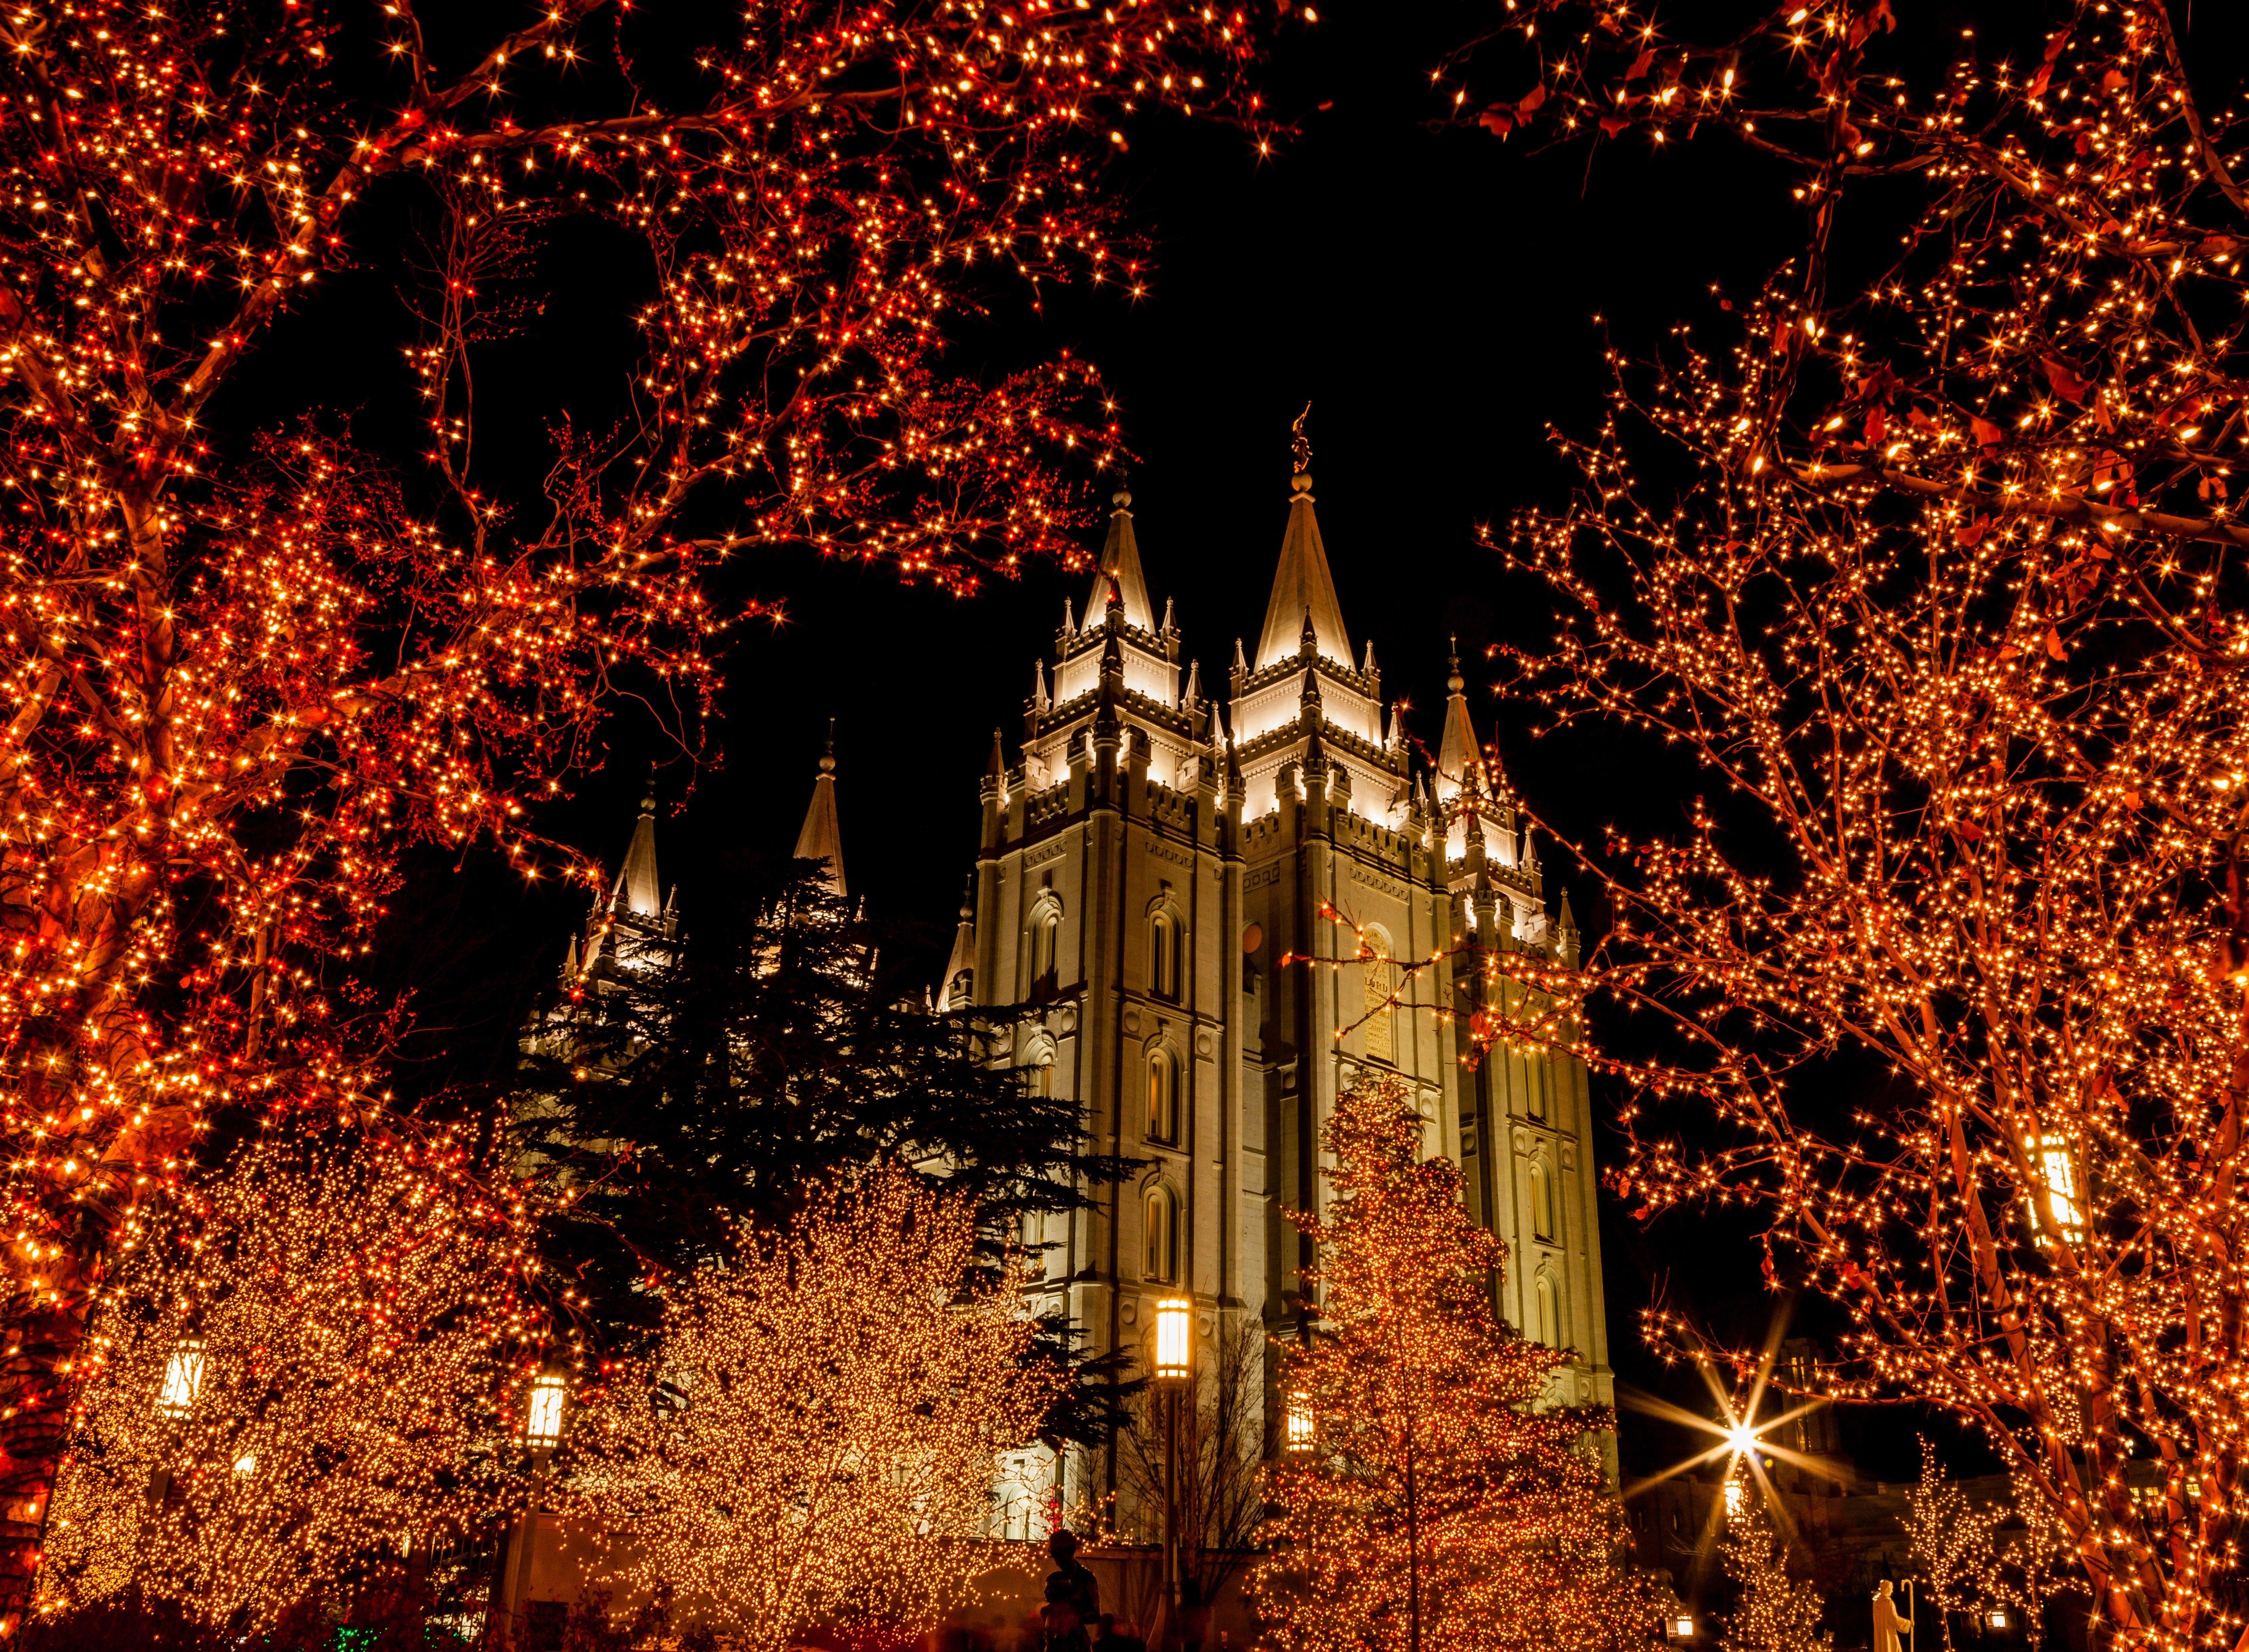 Salt Lake Temple during Christmas